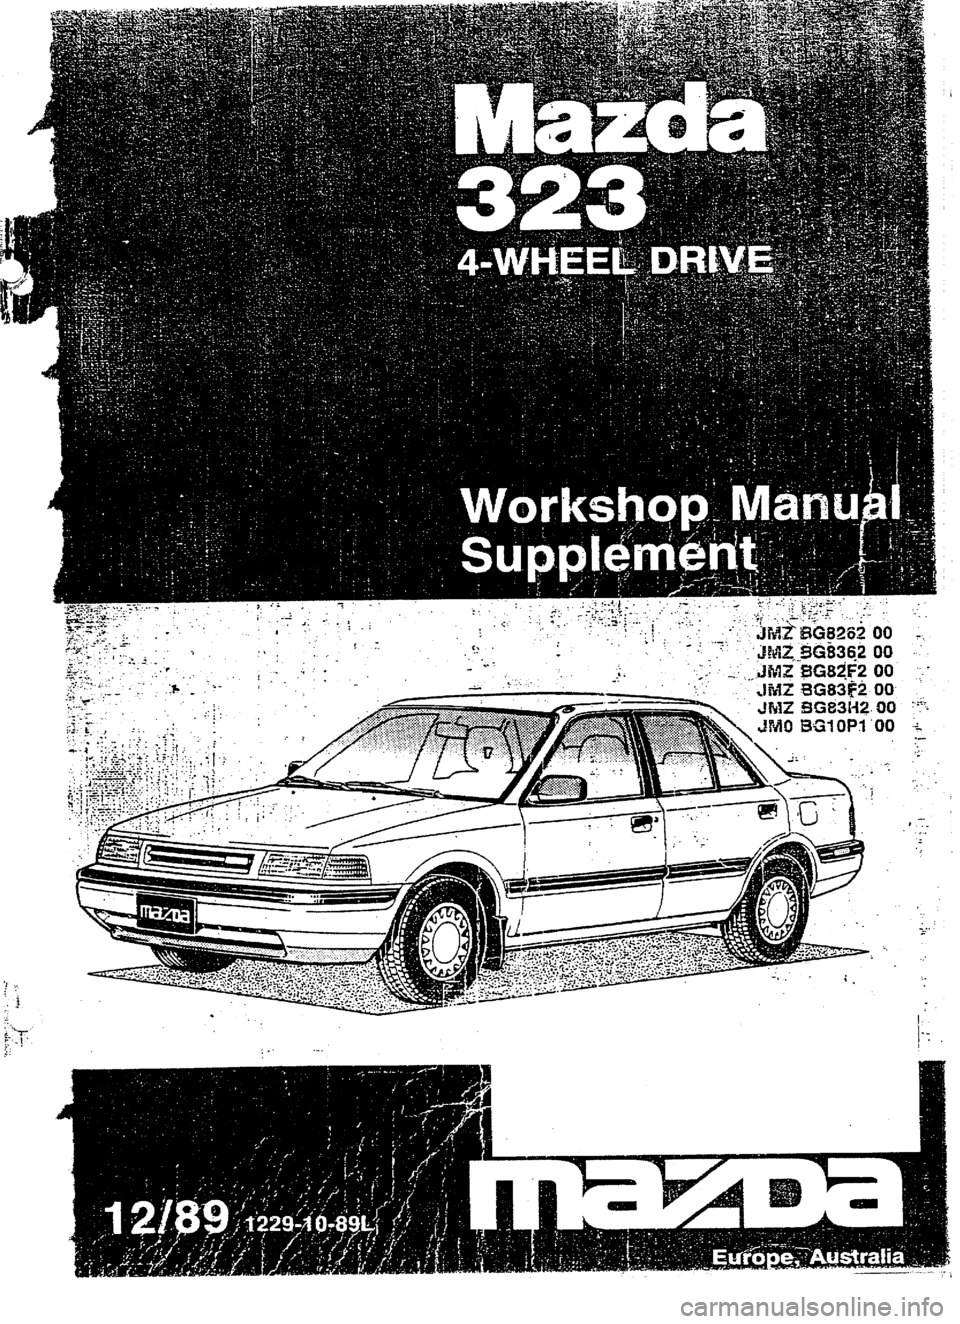 MAZDA 232 1990  Workshop Manual Suplement IV -- .-. .- -- 
i -. 
I .  